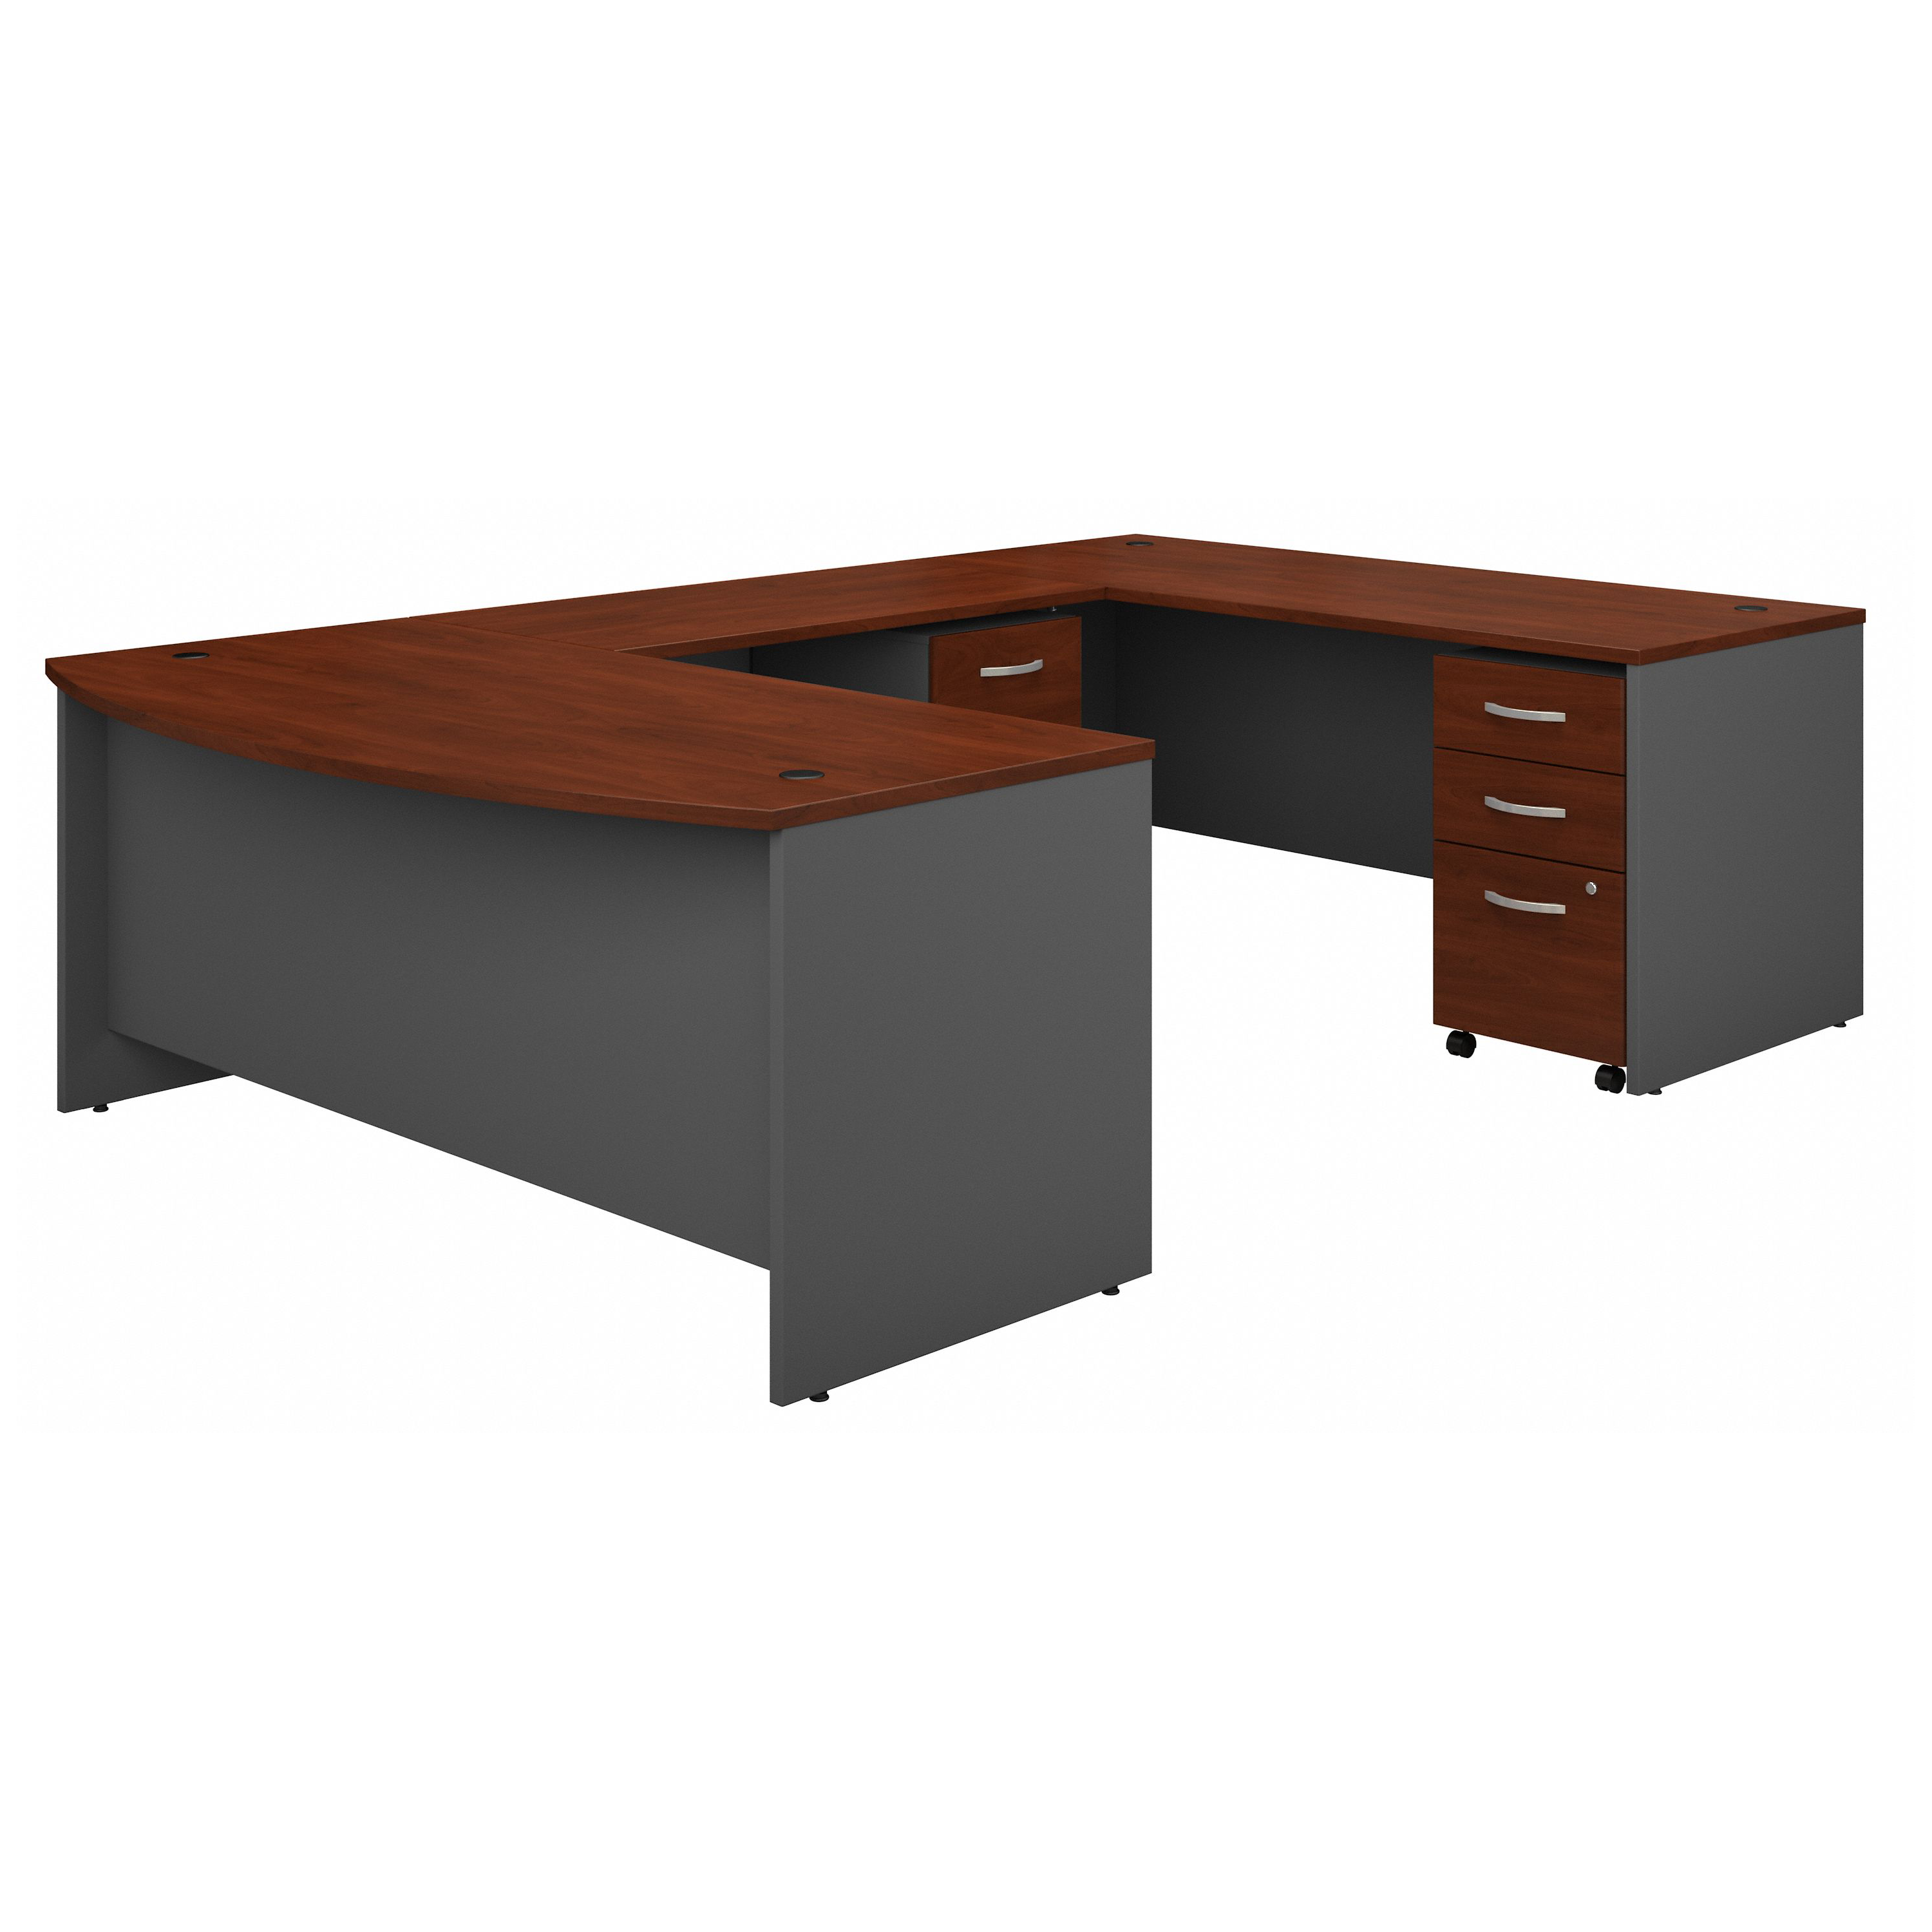 Shop Bush Business Furniture Series C 72W x 36D Bow Front U Shaped Desk with Mobile File Cabinets 02 SRC043HCSU #color_hansen cherry/graphite gray